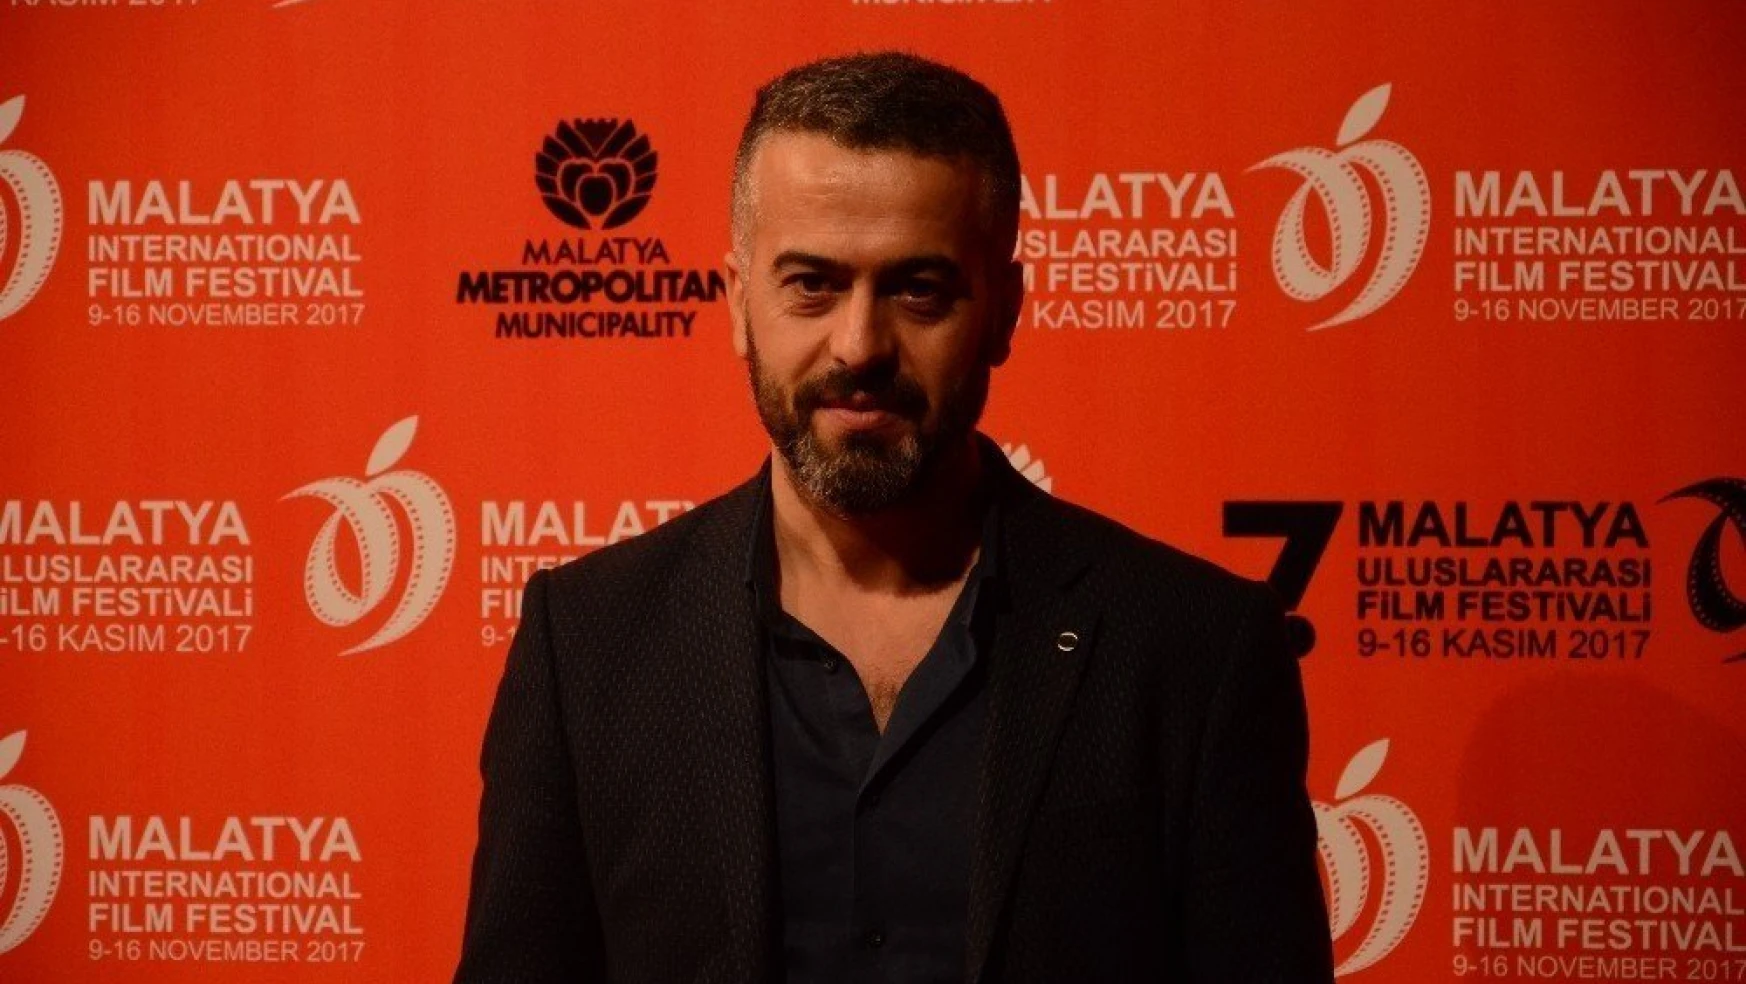 Malatya Film Festivali görkemli tören ile sona erdi
